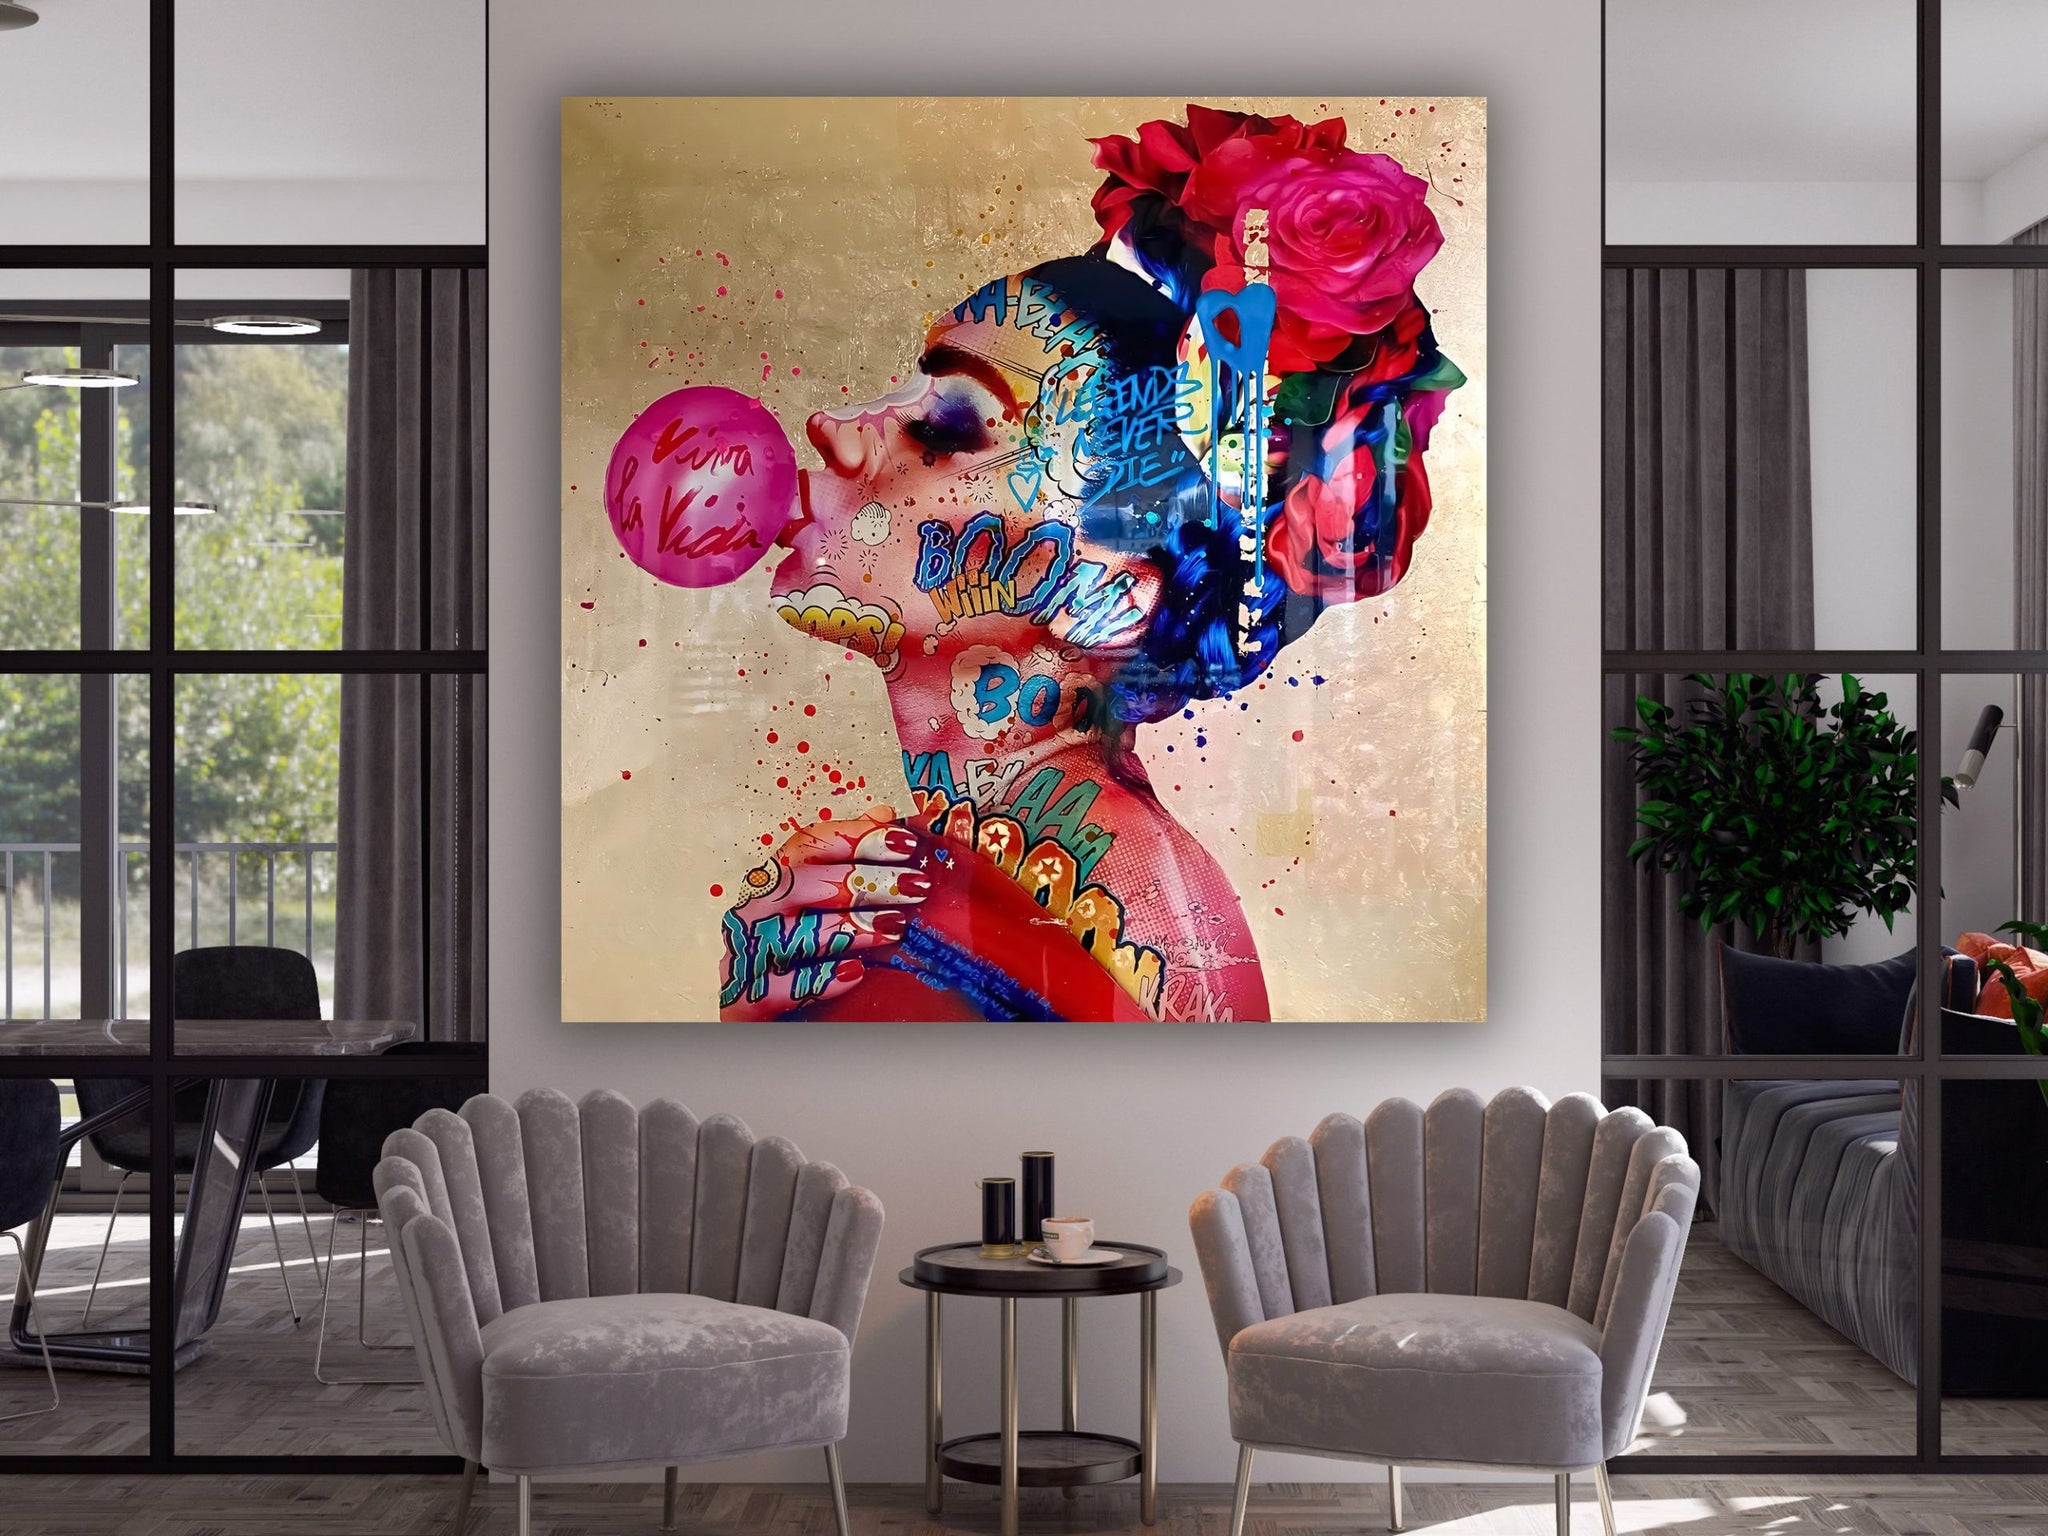 Bubble Gum Woman POP Art, OMG Pop Art Wall Art, Shock Style Pop Art, Comic Style Pop Art, Woman Portrait Framed Canvas